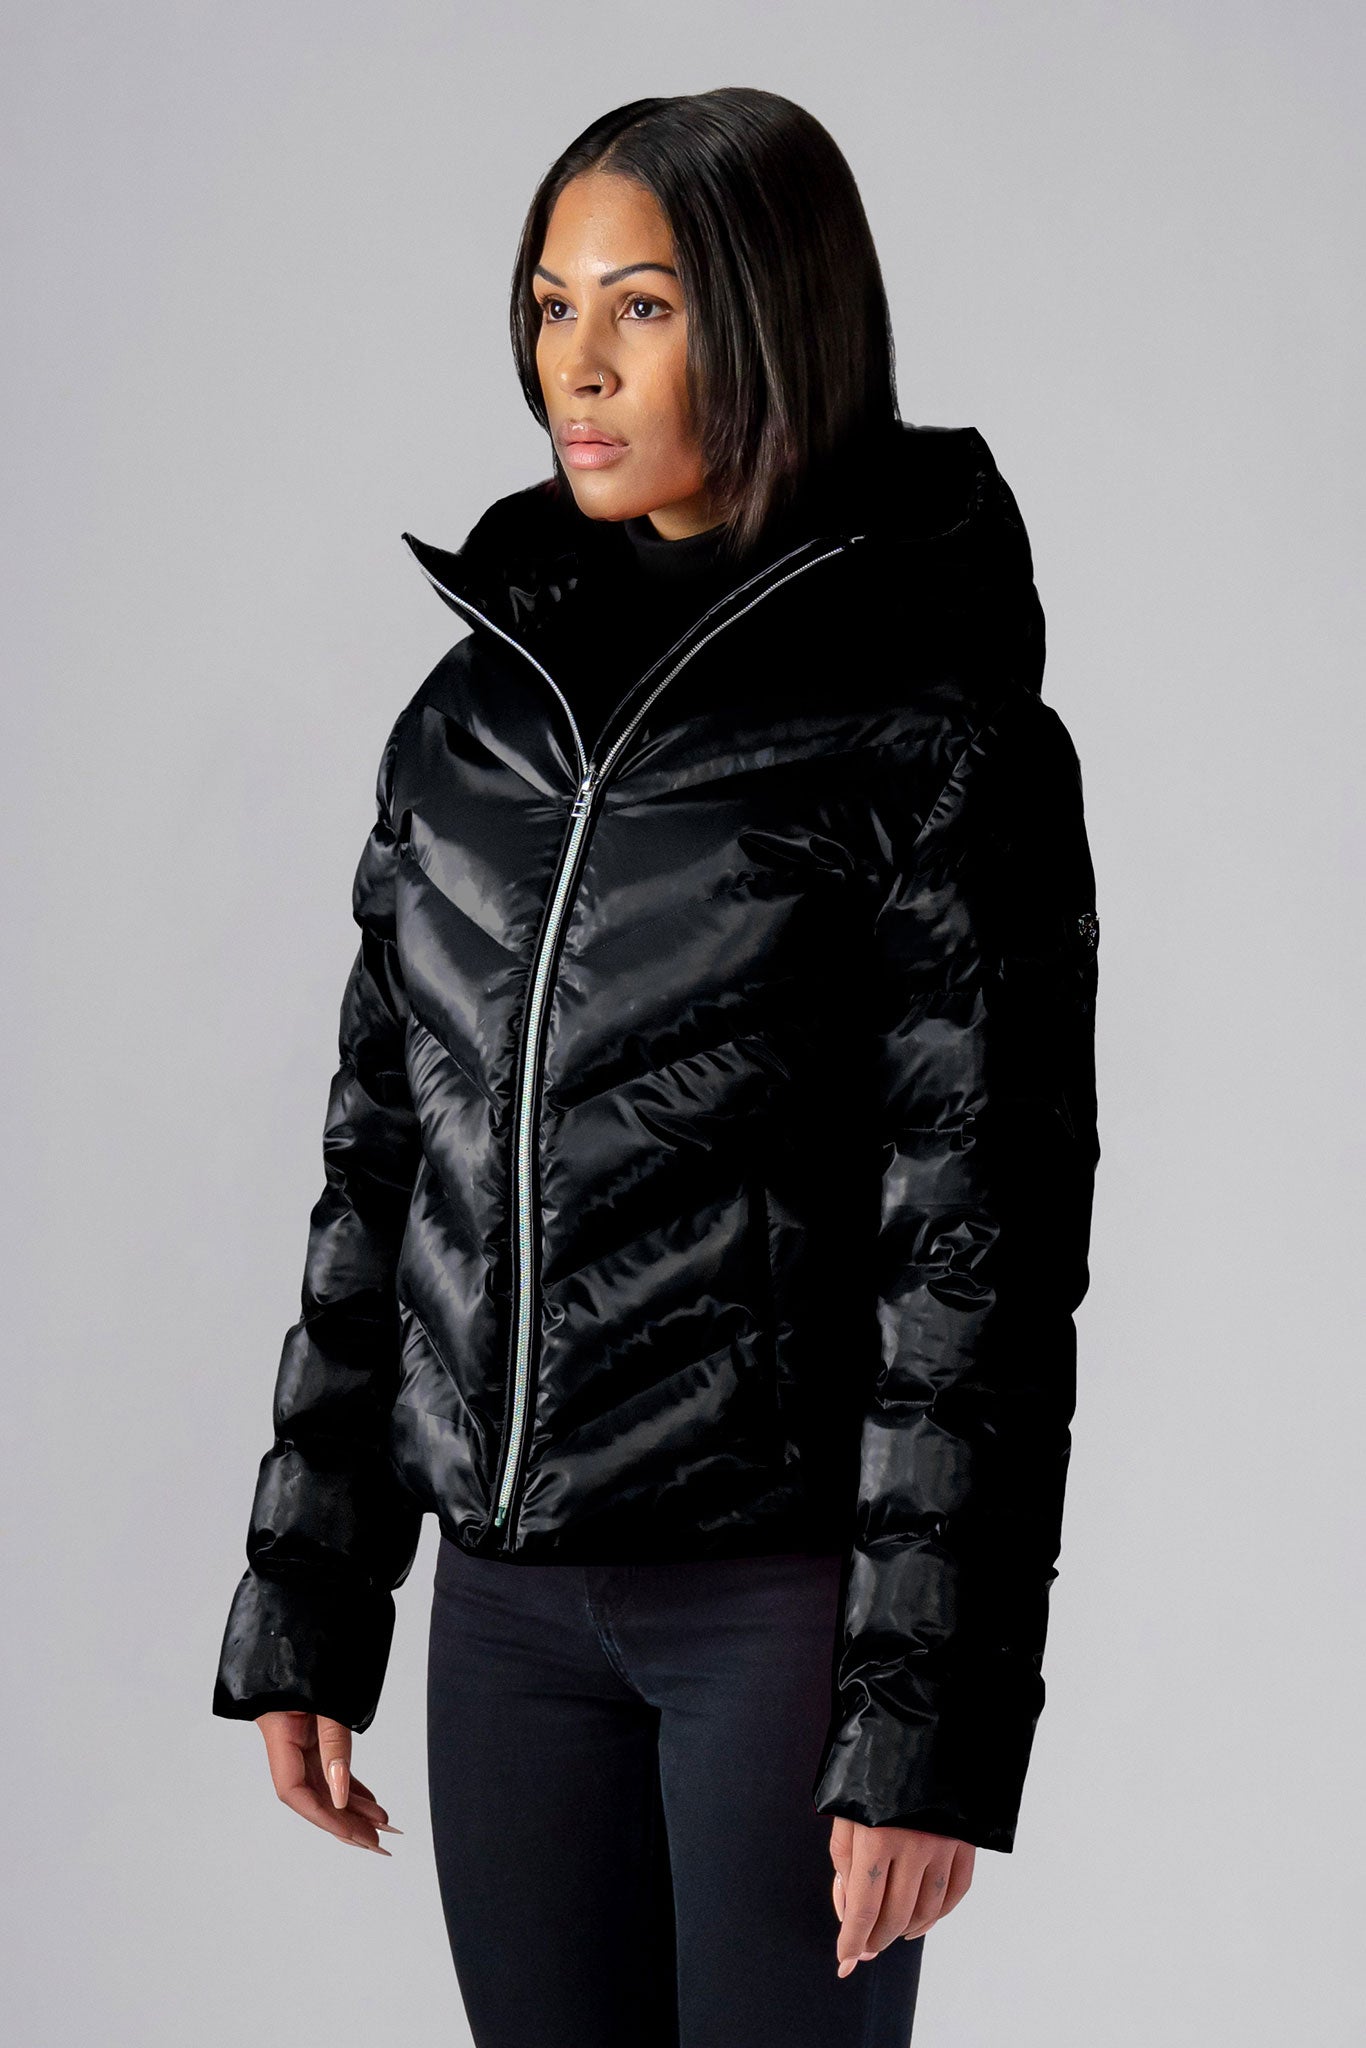 Woodpecker Women's Robin Winter coat. High-end Canadian designer winter coat for women in 